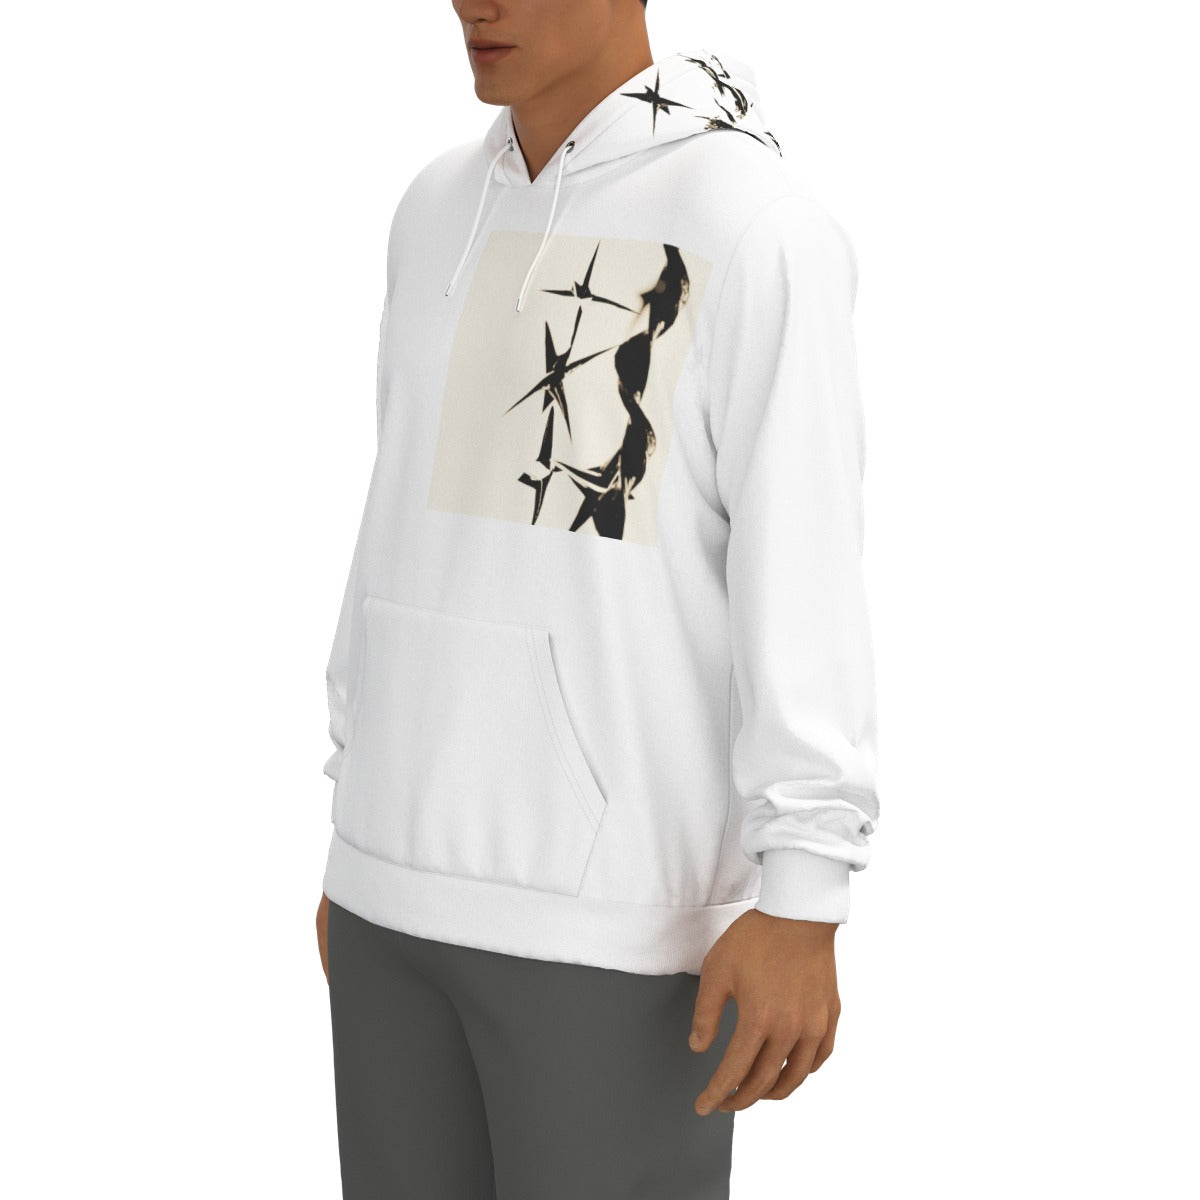 "SPIKED" hoodie design